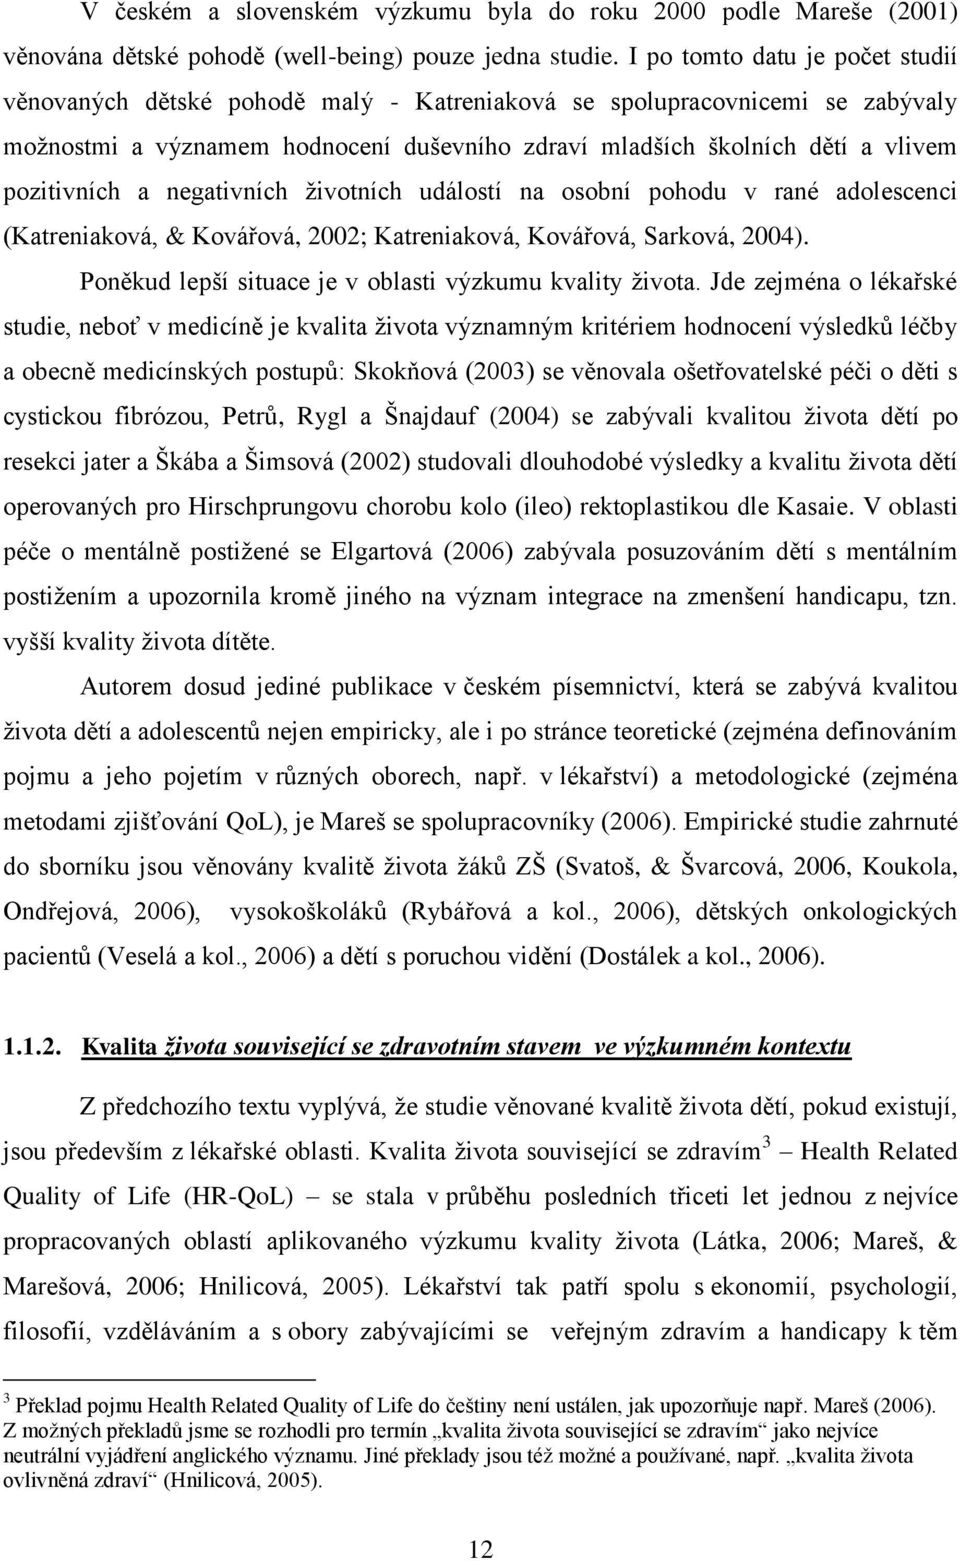 pozitivních a negativních ţivotních událostí na osobní pohodu v rané adolescenci (Katreniaková, & Kovářová, 2002; Katreniaková, Kovářová, Sarková, 2004).